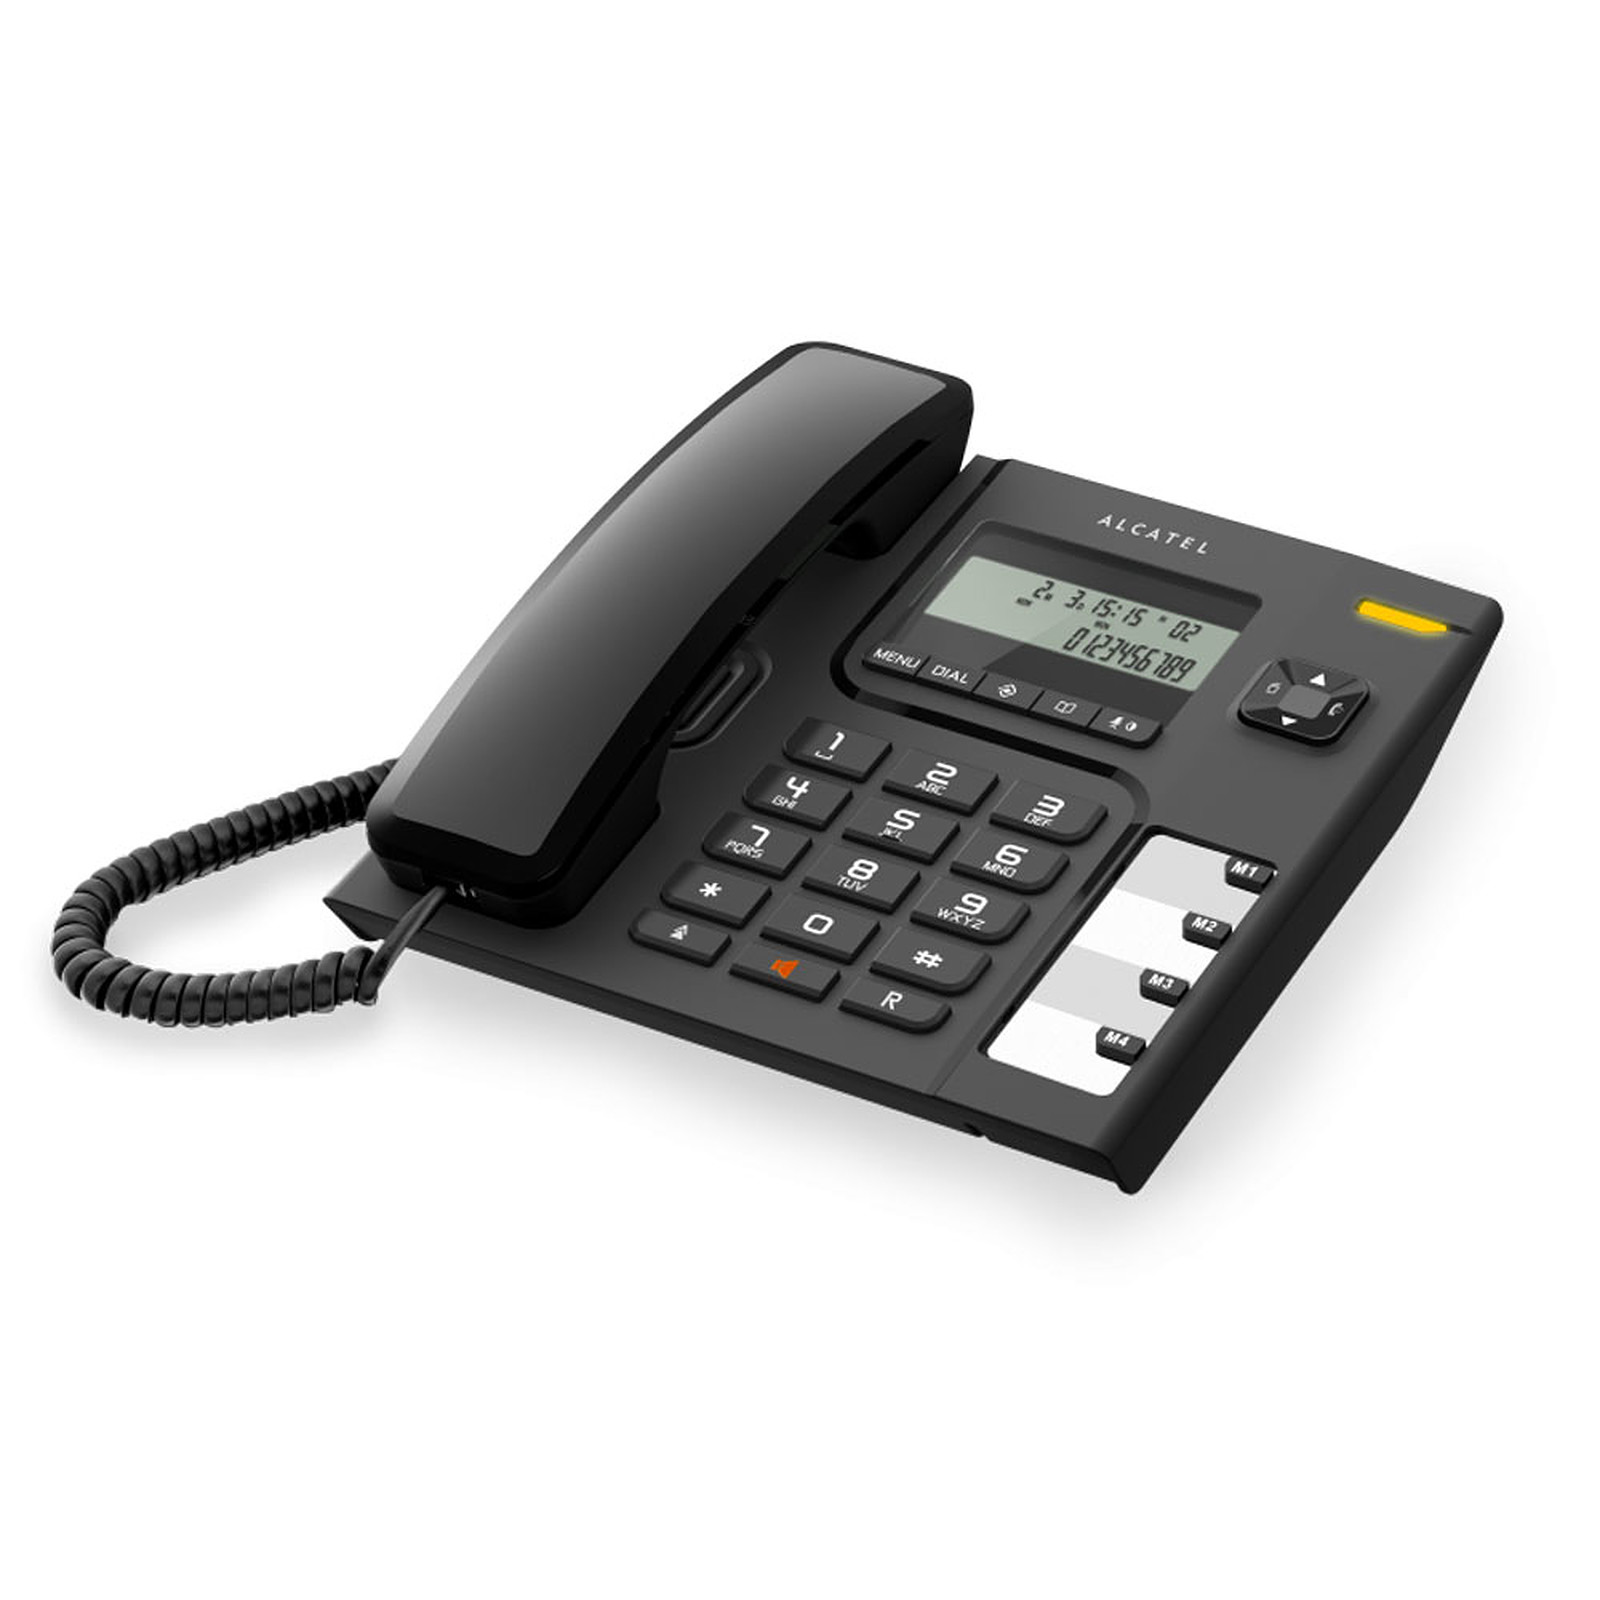 Alcatel Temporis T56 · Occasion - Telephone filaire Alcatel - Occasion